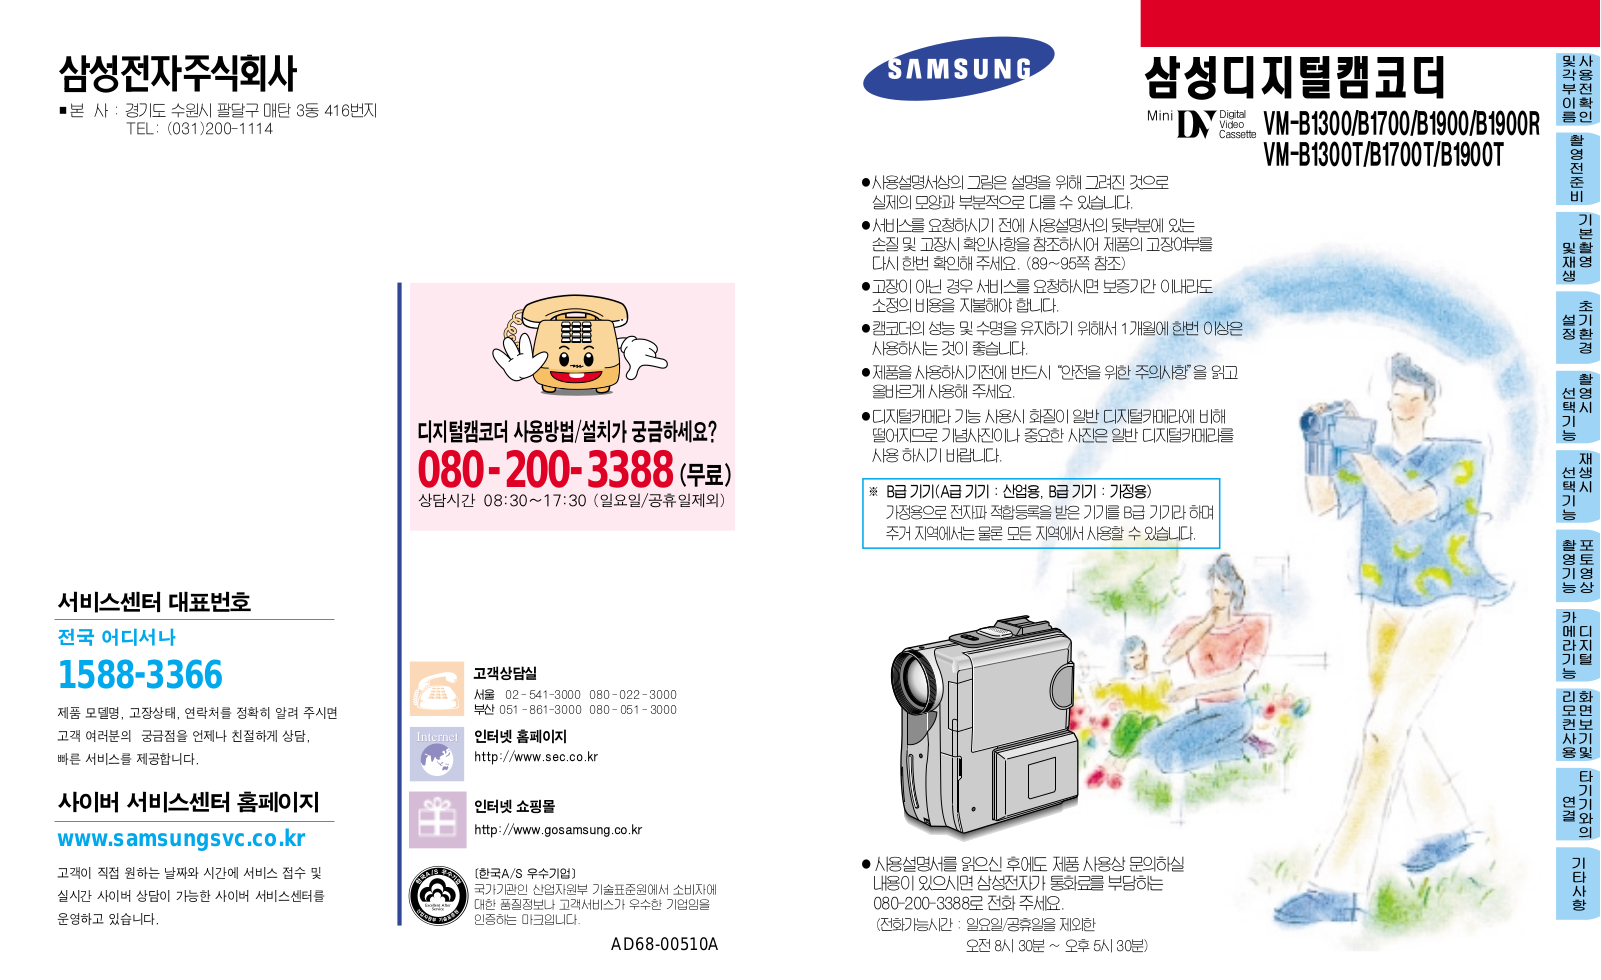 Samsung VM-B1900R, VM-B1900, VM-B1700, VM-B1300 User Manual